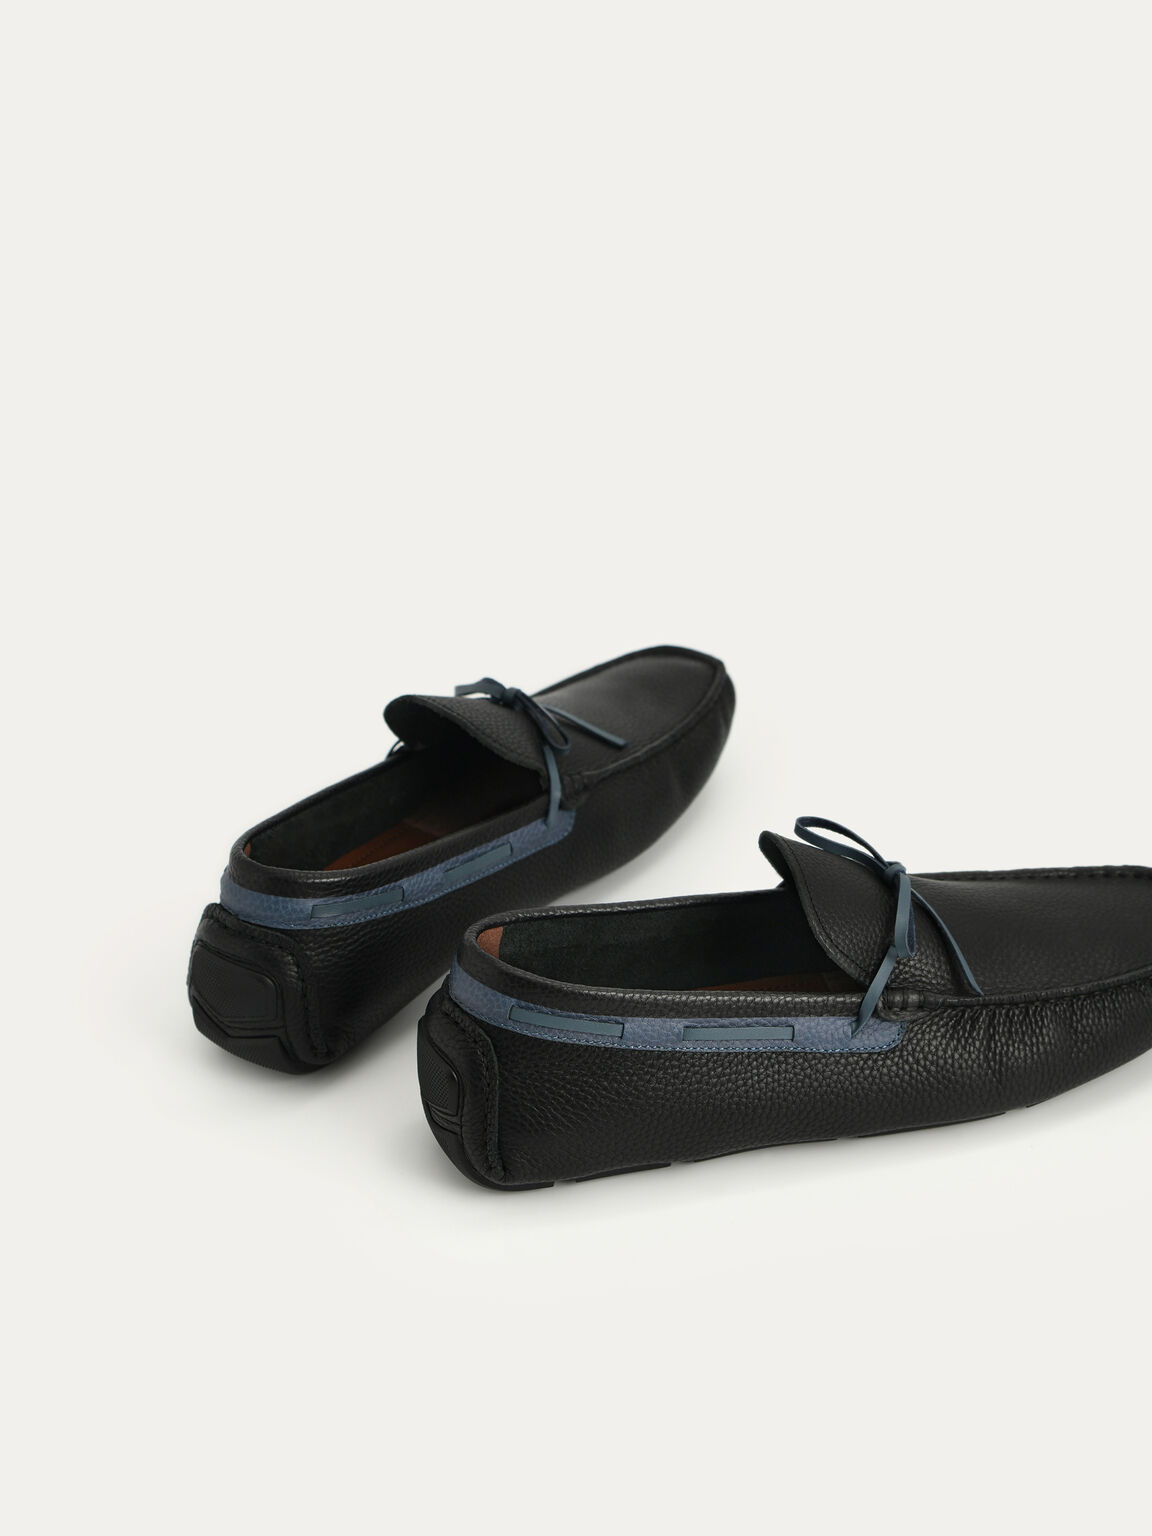 蝴蝶結織紋莫卡辛鞋, 黑色